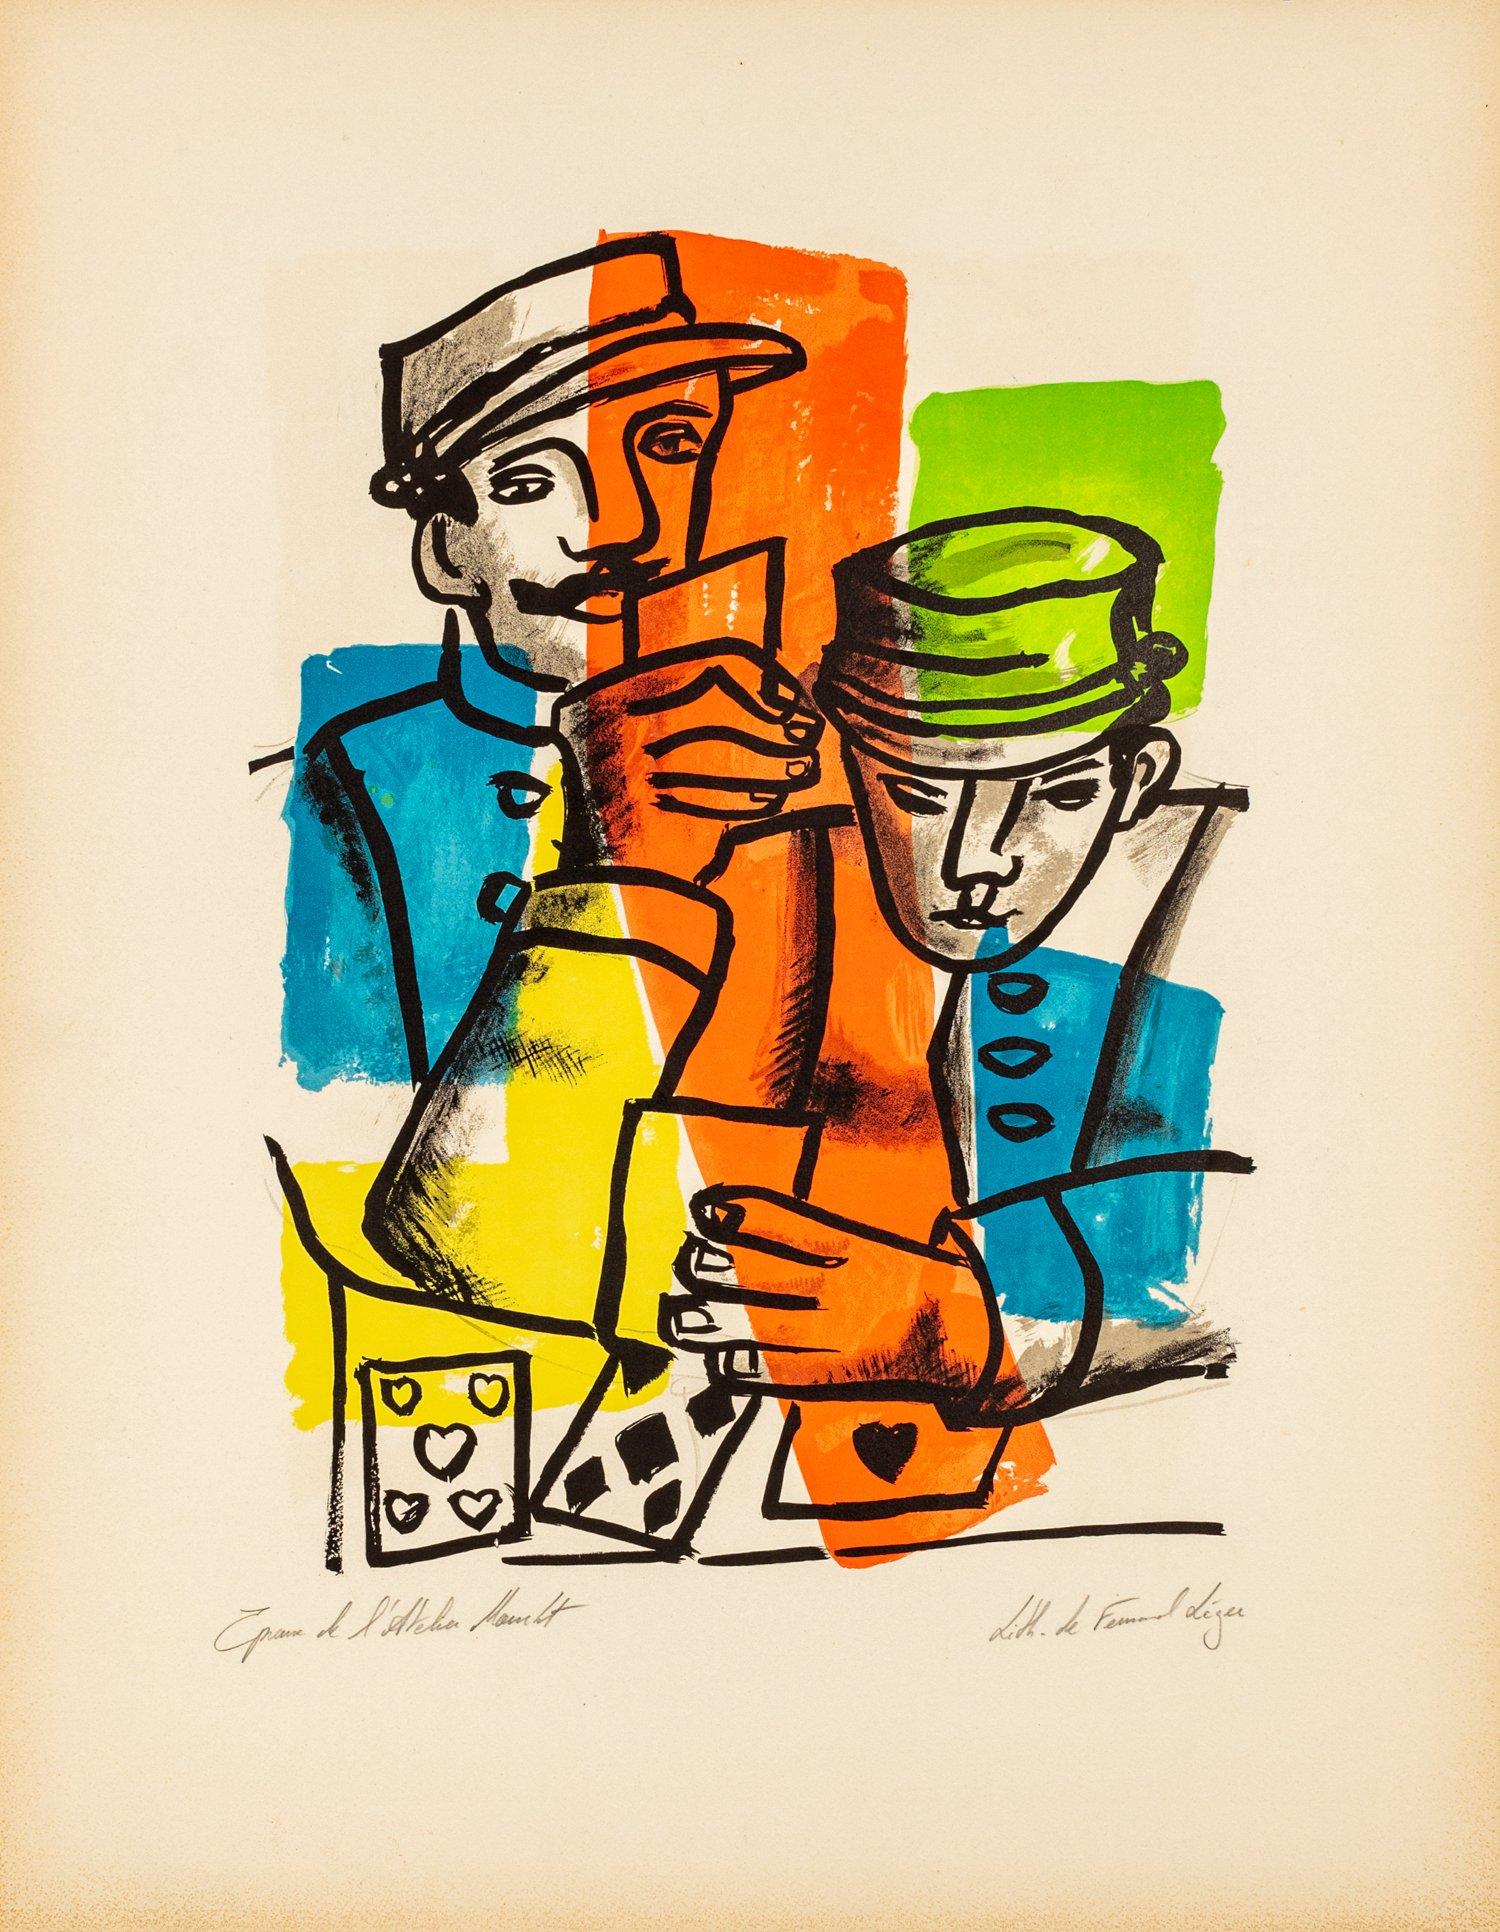 Fernand Léger Print - Les Soldats - "La Ville" by Fernand Leger, 1959